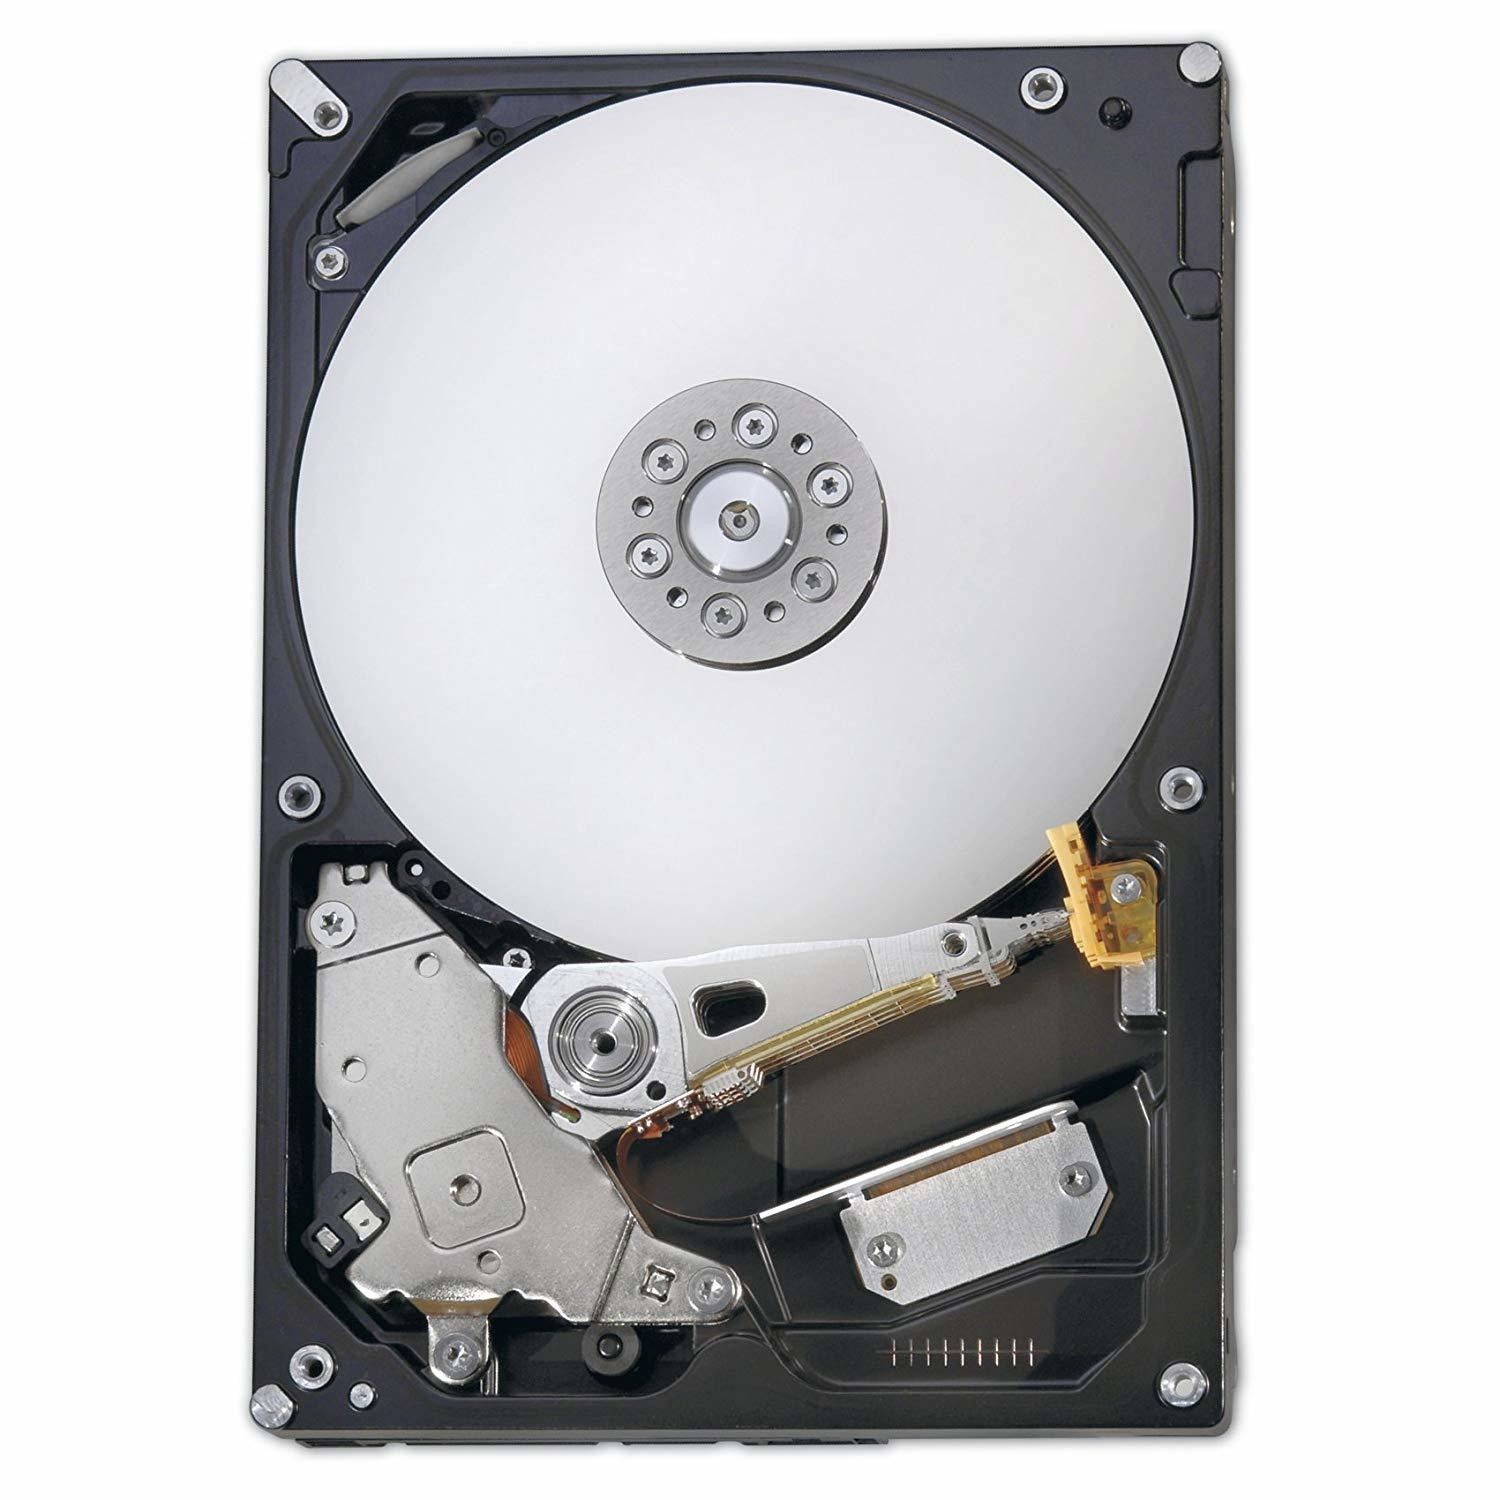 FUJITSU - hard drive - 2 TB - SATA 6Gb/s 2.5